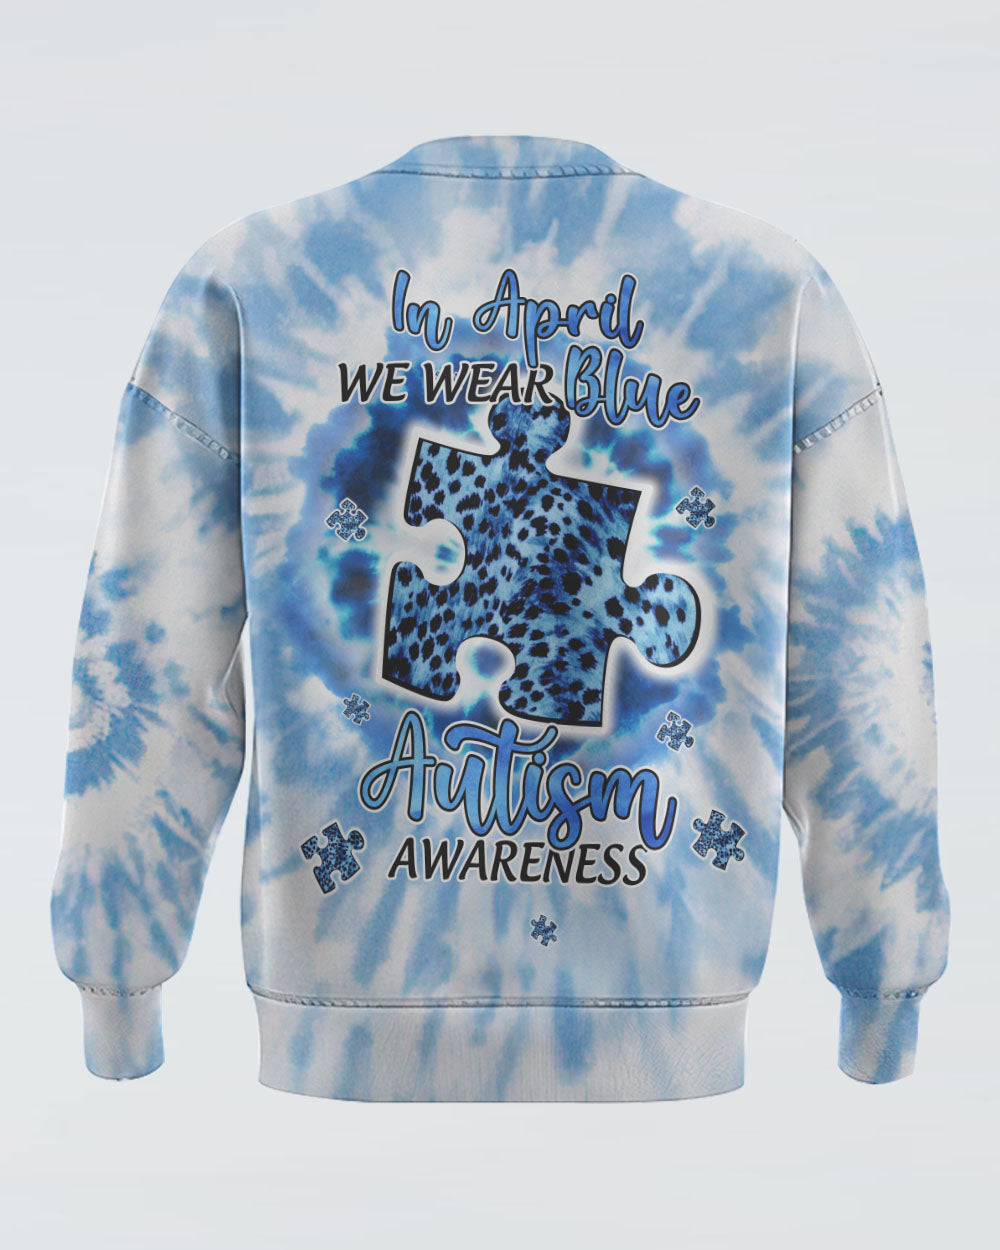 In April We Wear Blue Women's Autism Awareness Sweatshirt